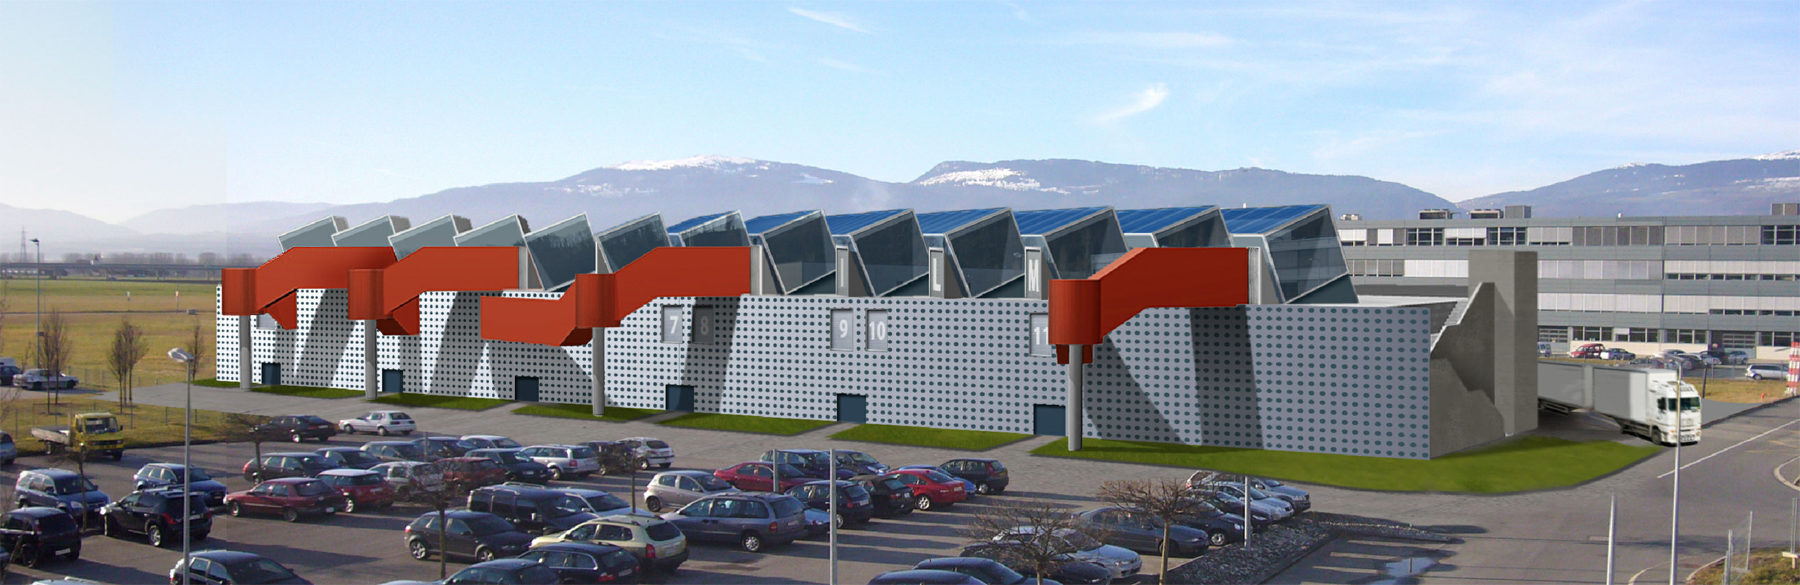 Halle pour le centre d’enterprise et d’innovation, Yverdon les Bains, Switzerland